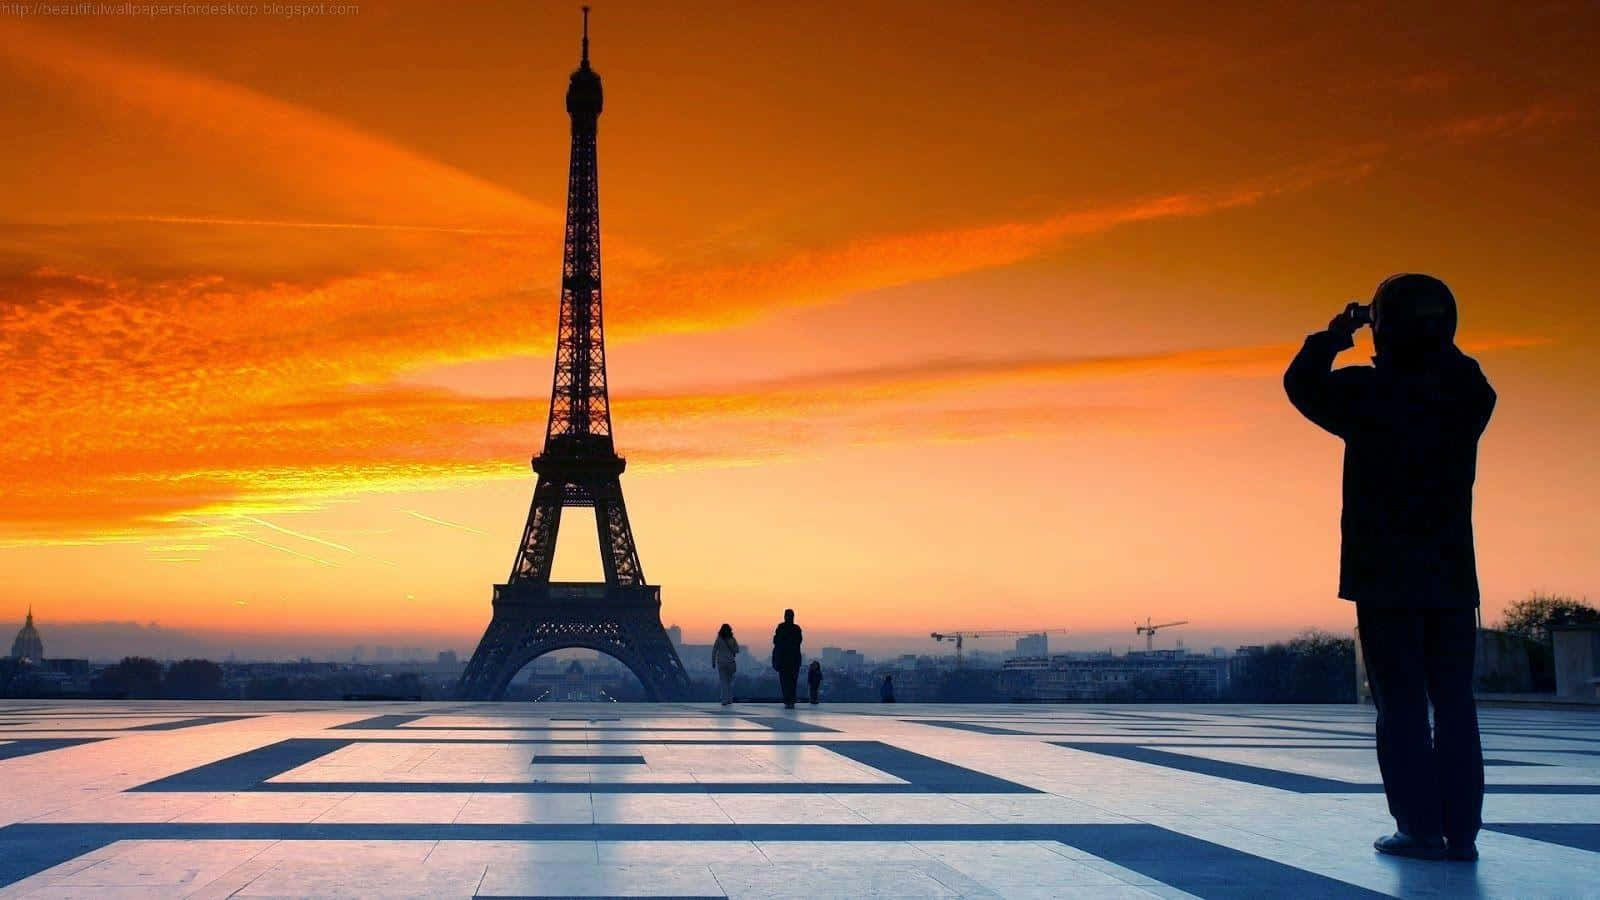 Laicónica Torre Eiffel Erguida Con Orgullo En La Ciudad De Las Luces.